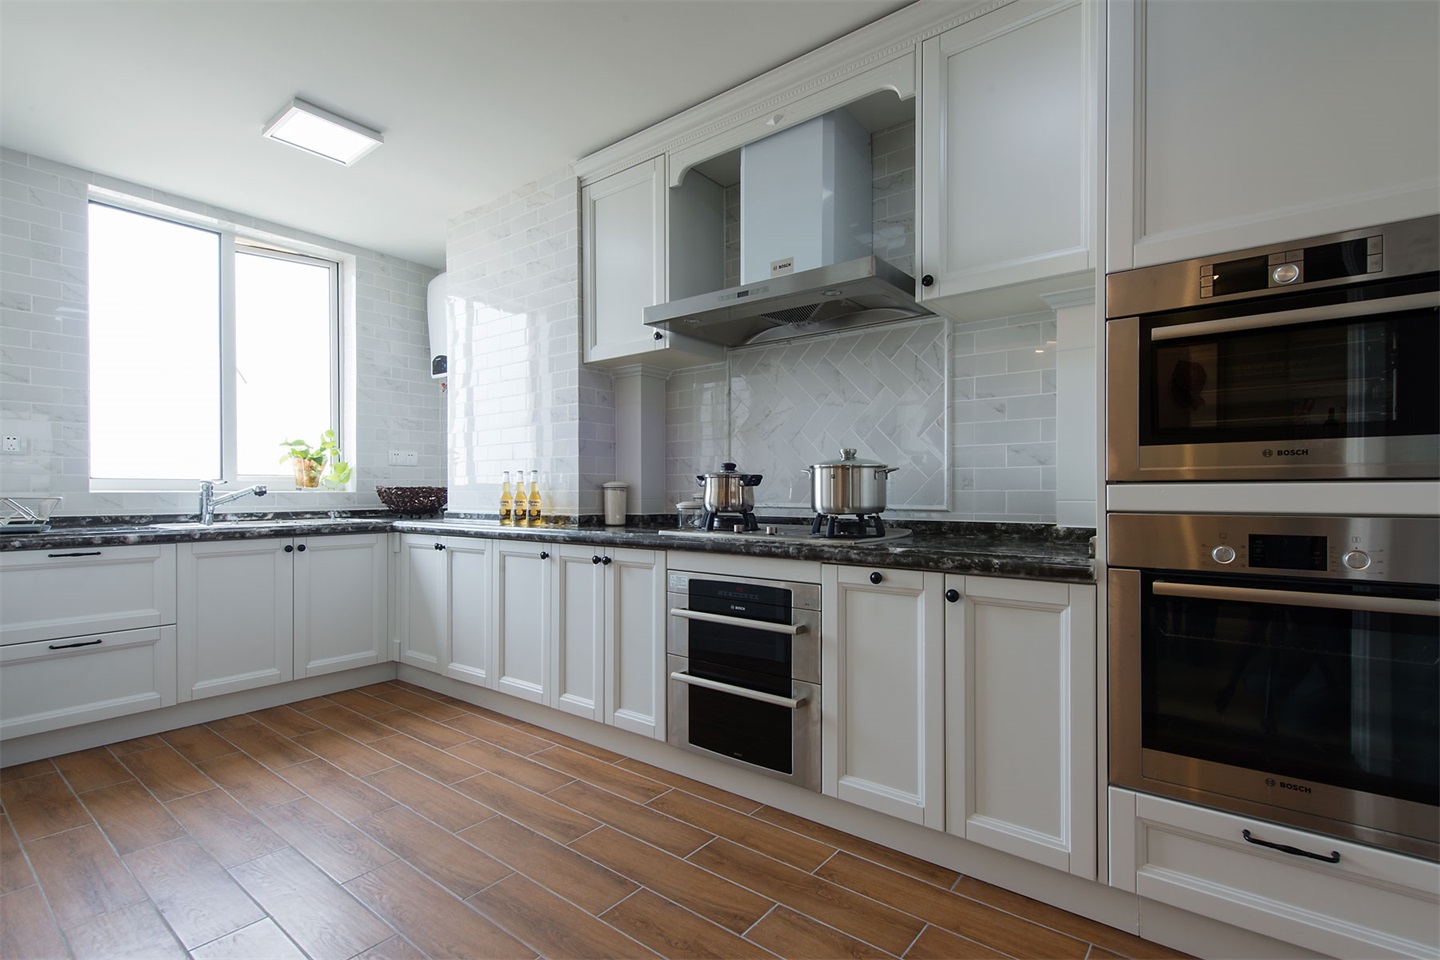 厨房以白色为主,白色橱柜相当有质感,配上嵌入式家电,整个空间显得